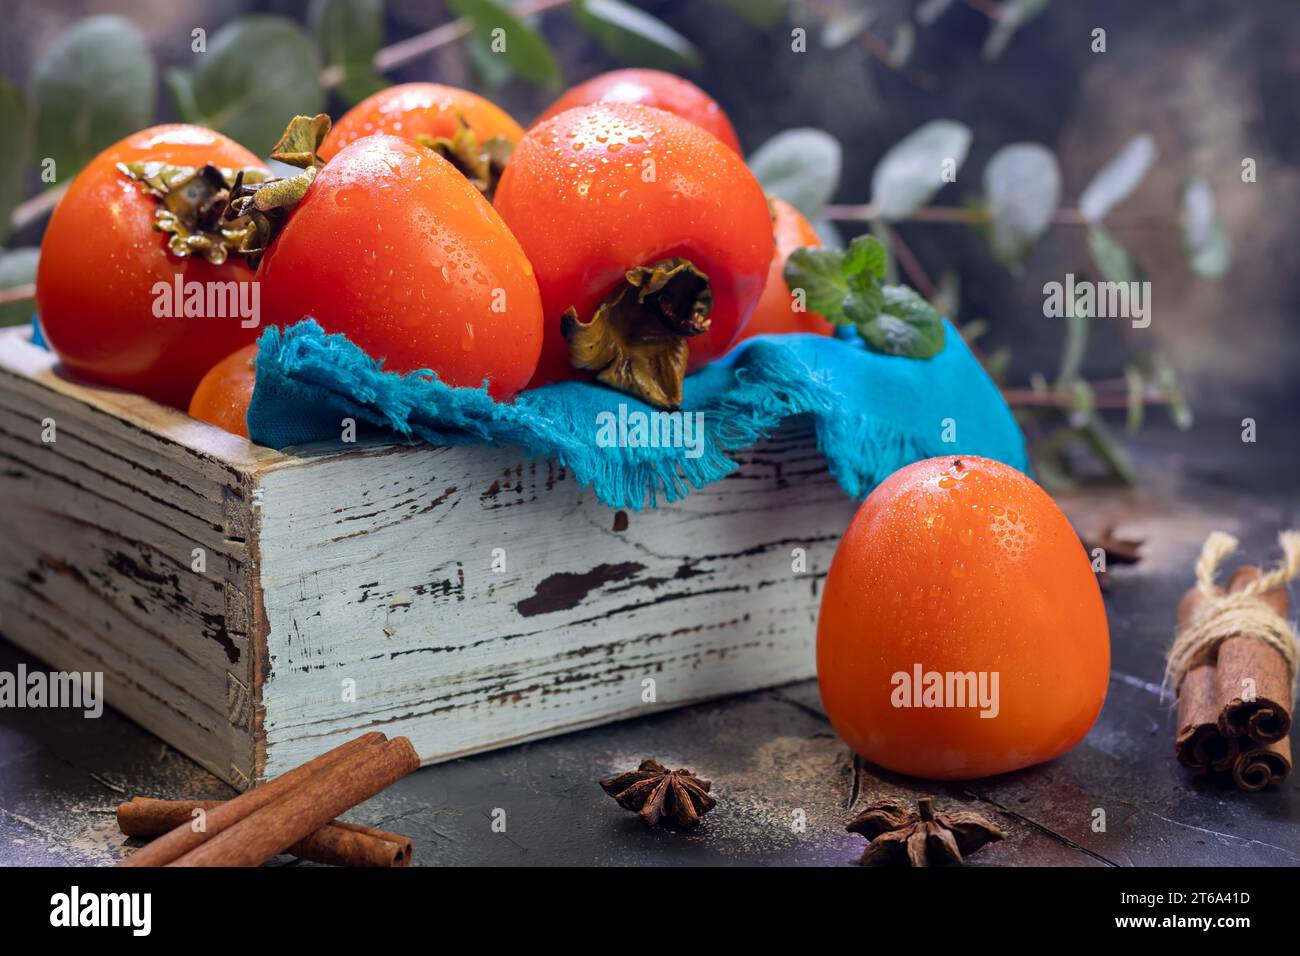 Cachi su sfondo scuro. Frutta fresca matura su un piatto blu e in scatola. Mangiare sano. Foto Stock